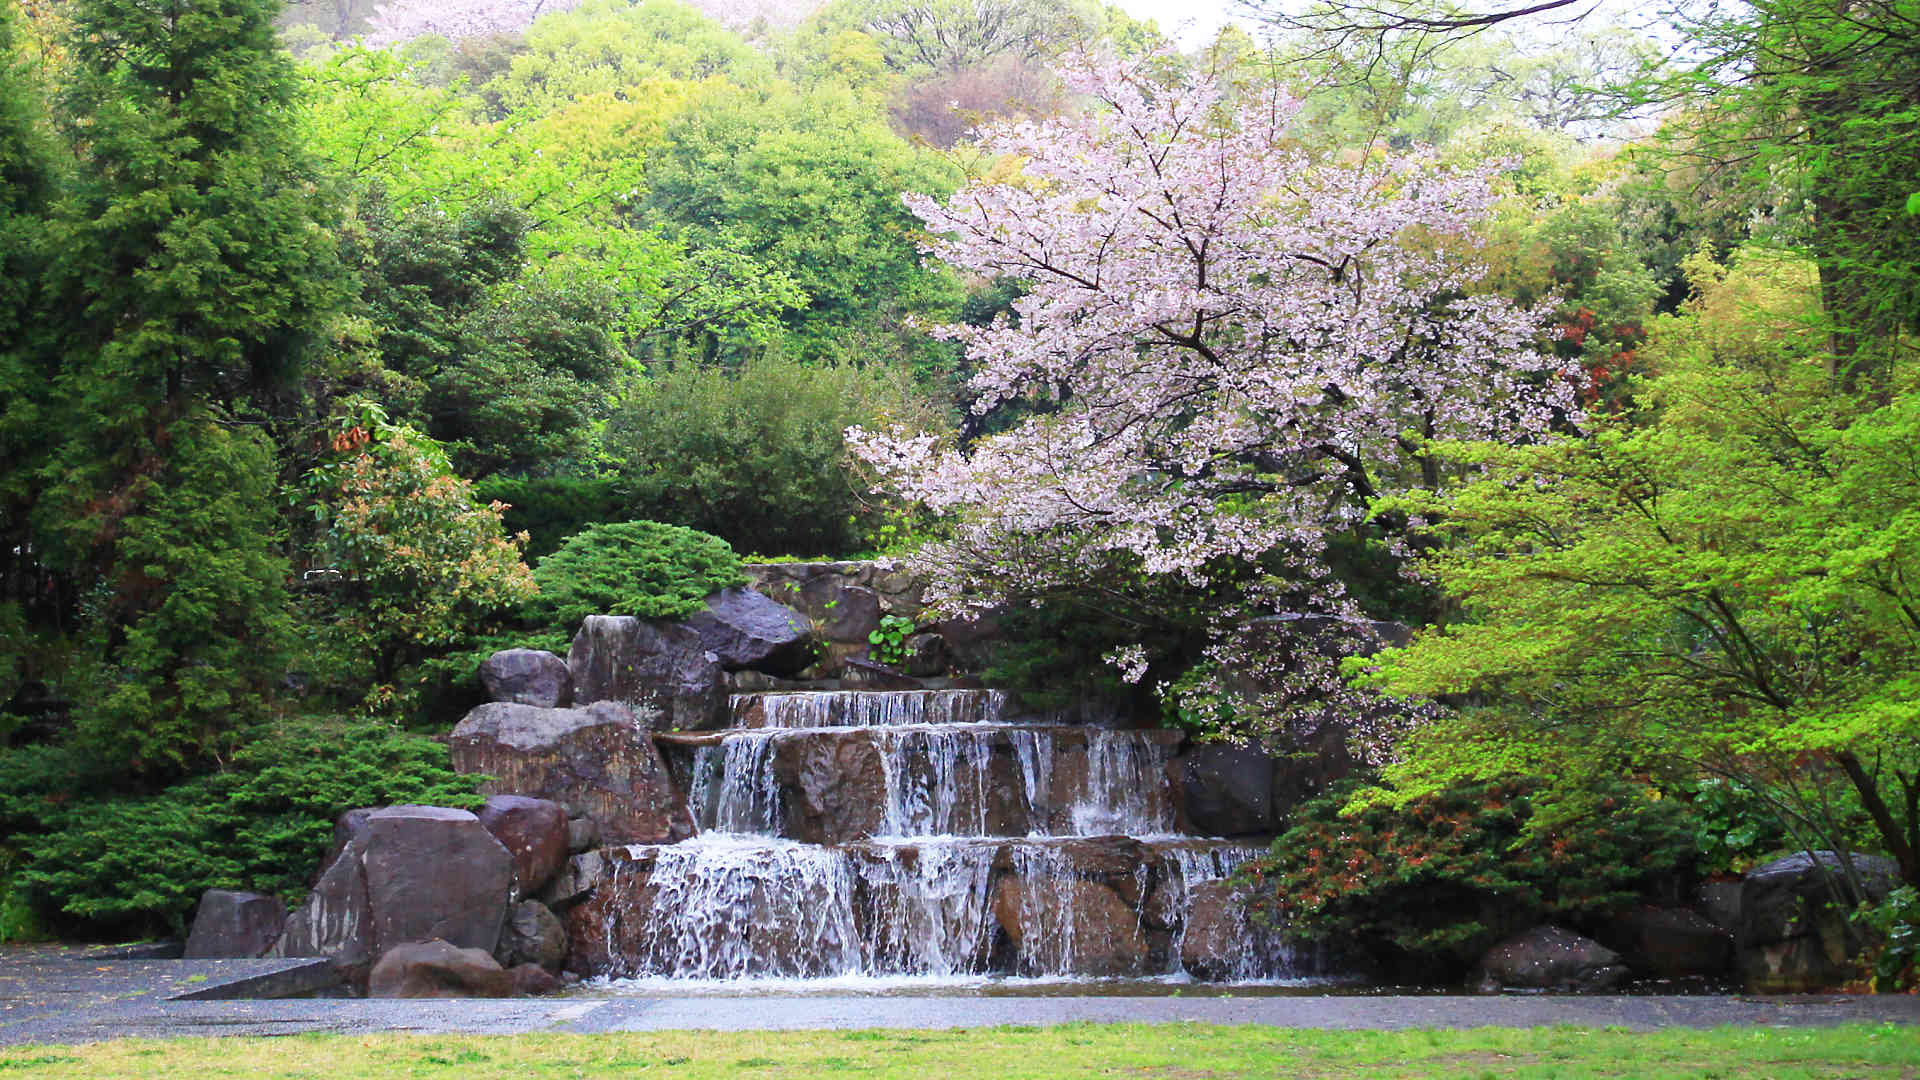 須磨さくらめぐりバス 敦盛桜 無料のお花見バス 須磨浦公園でライトアップイベント開催